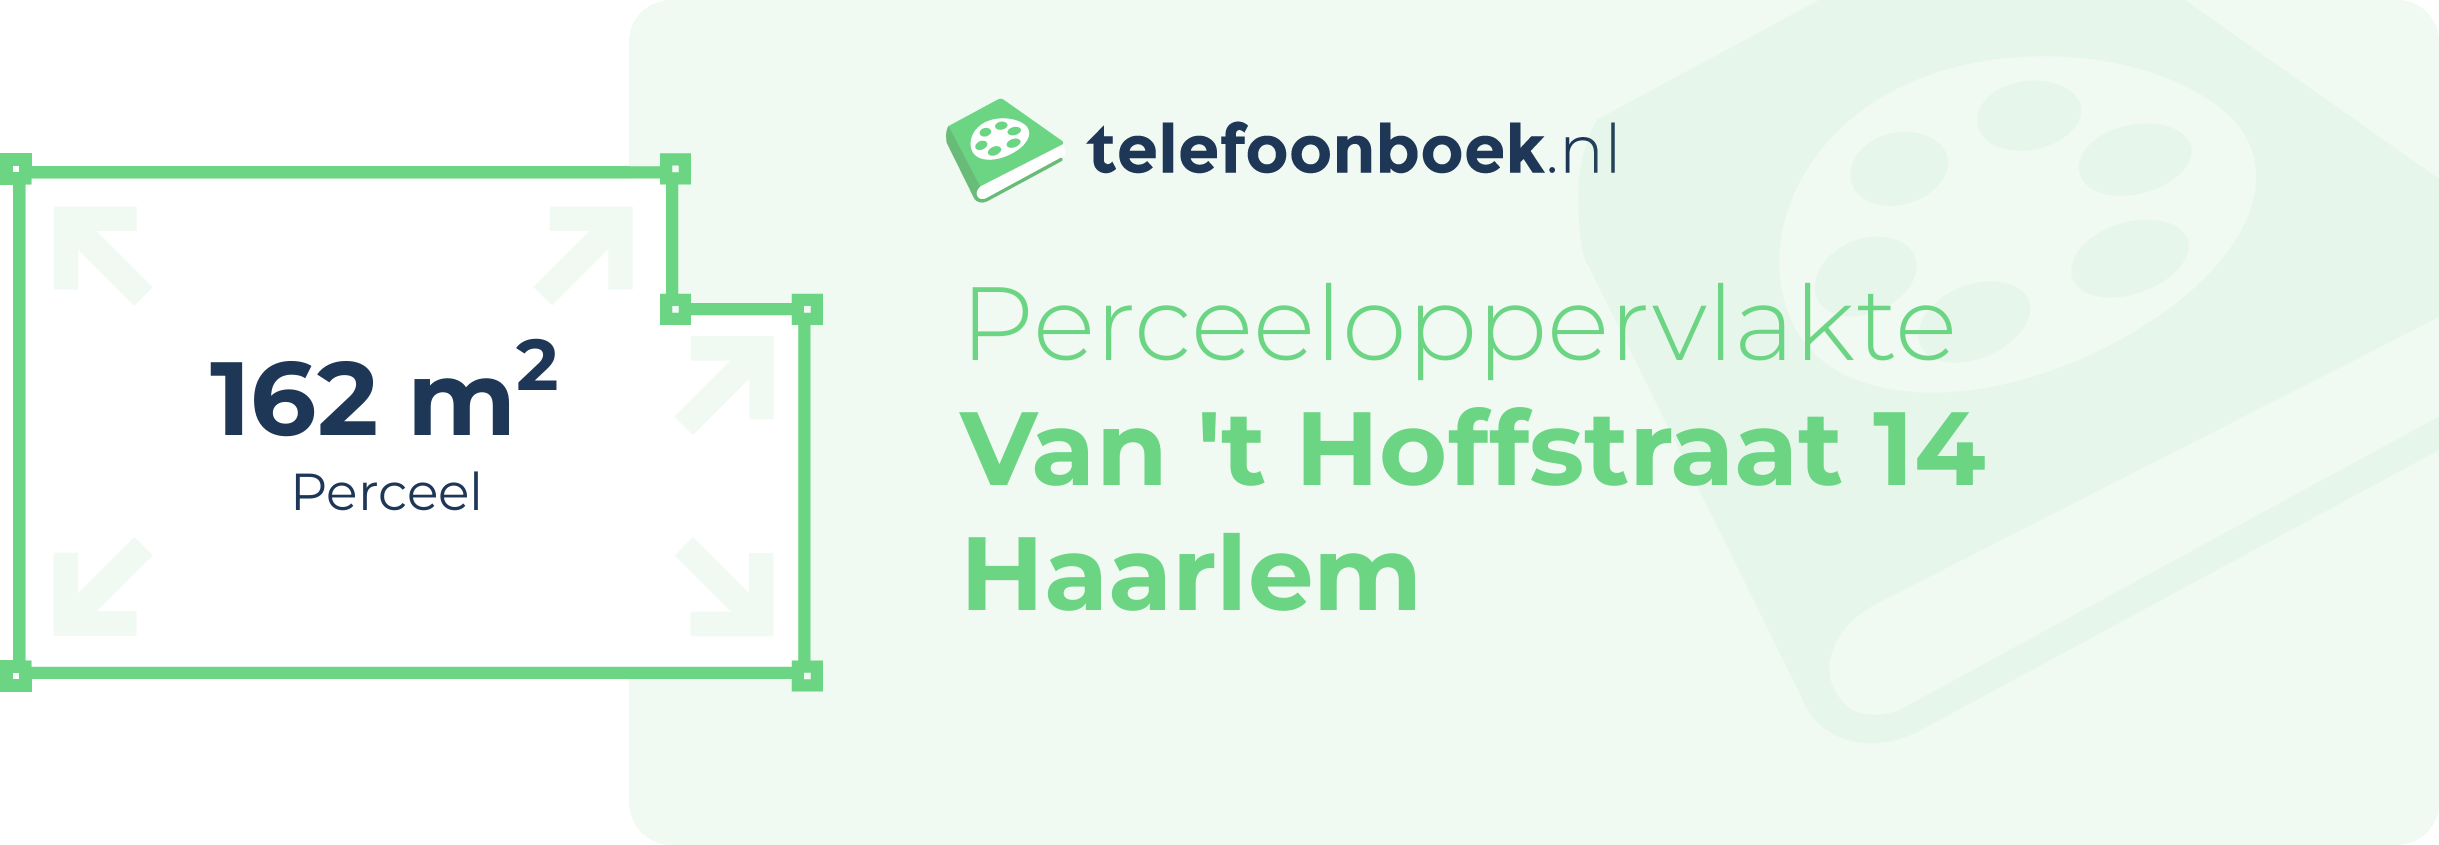 Perceeloppervlakte Van 't Hoffstraat 14 Haarlem